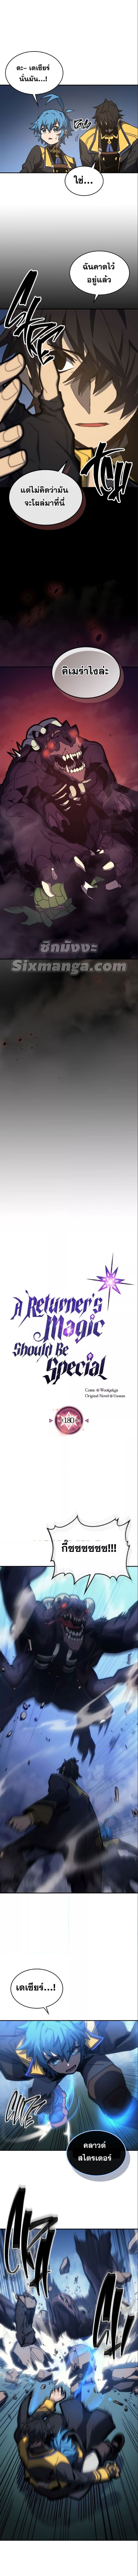 A Returner's Magic Should Be Special 180 (1)